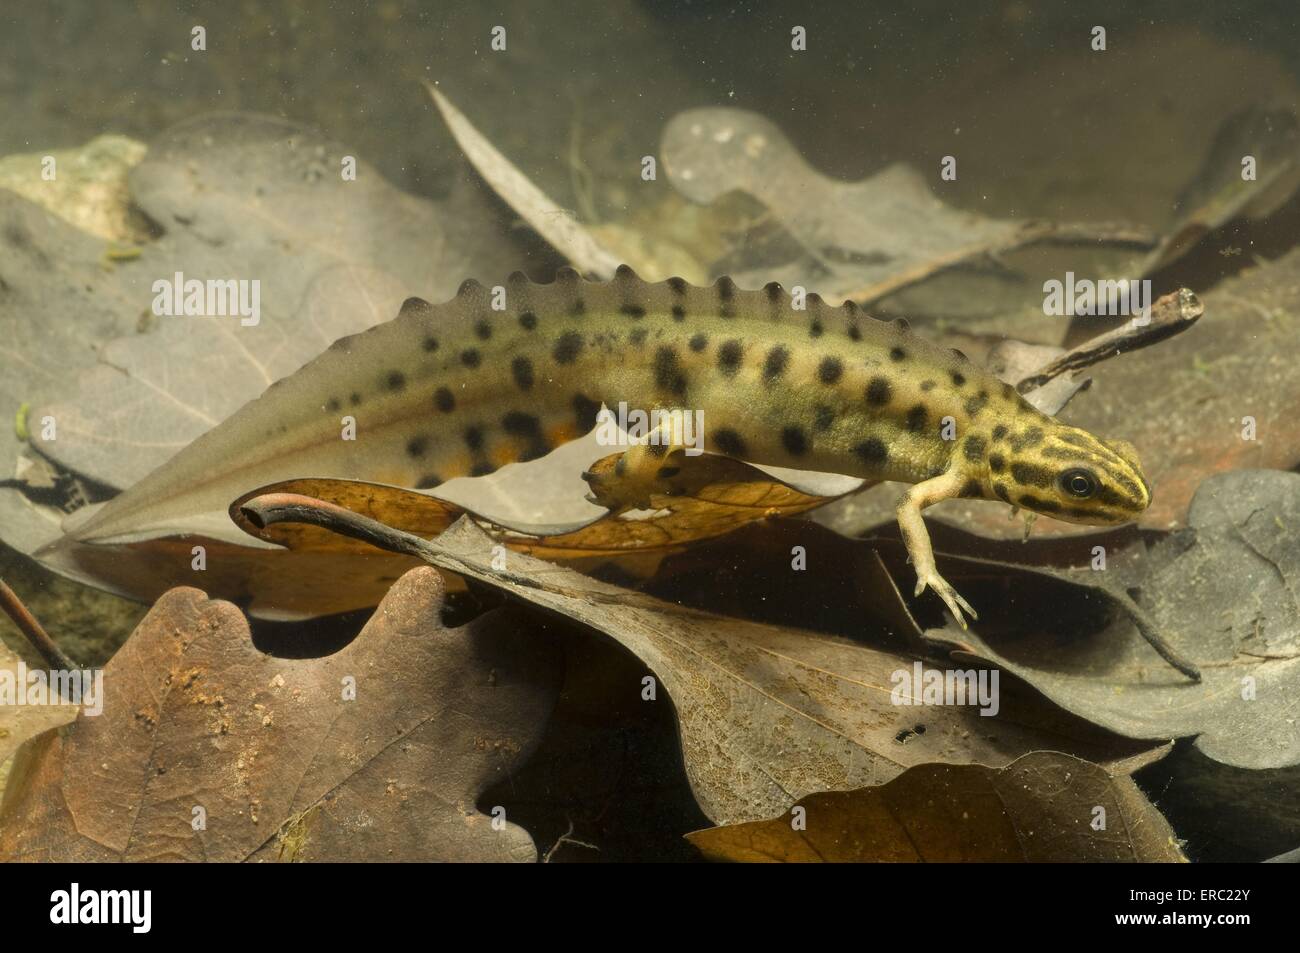 common newt Stock Photo